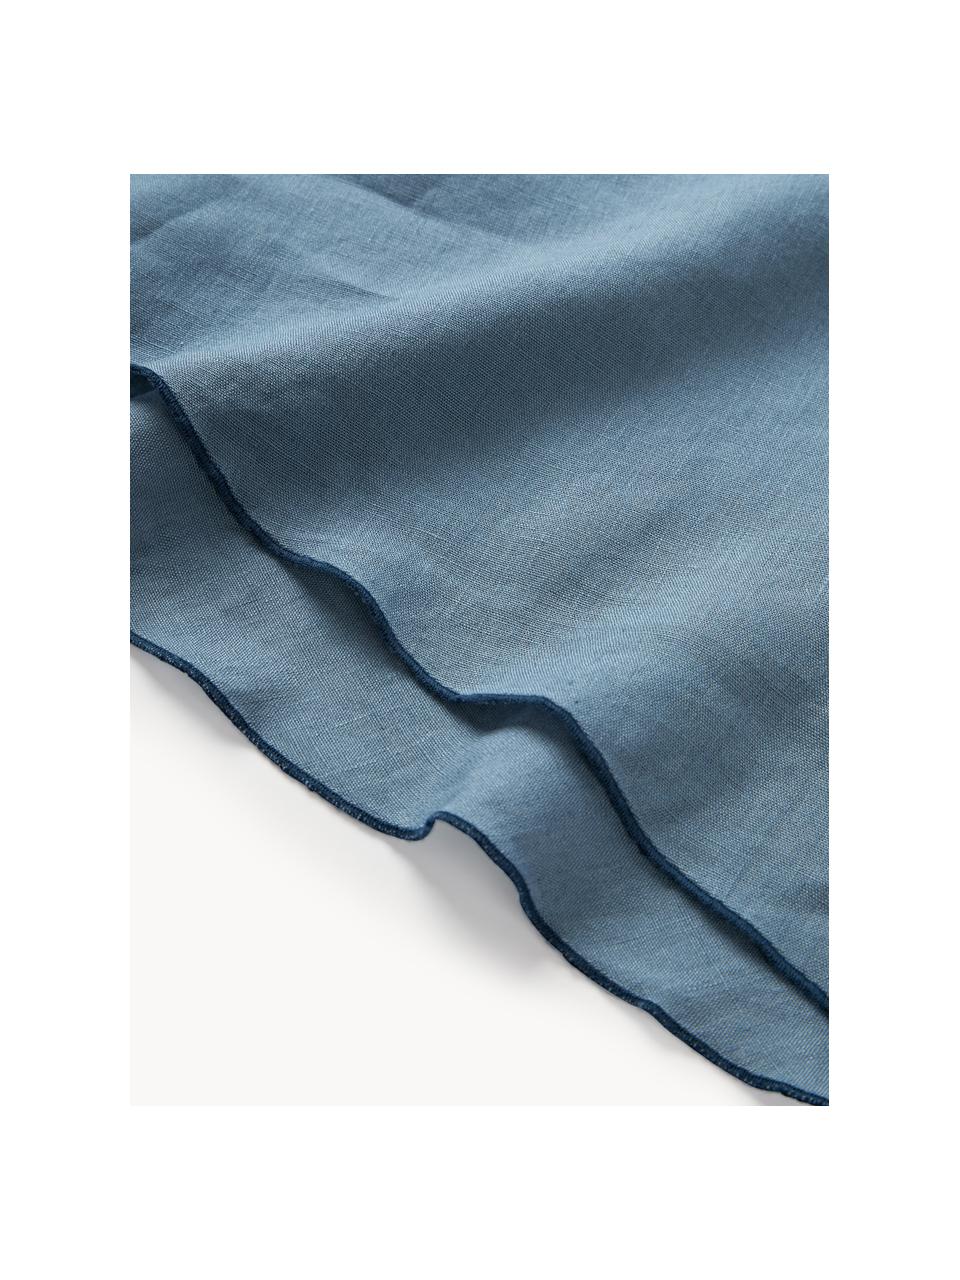 Ronde linnen tafelkleed Kennedy met bies, 100% gewassen linnen

Linnen is een natuurlijke vezel die wordt gekenmerkt door ademend vermogen, duurzaamheid en zachtheid.

Het materiaal dat in dit product wordt gebruikt, is getest op schadelijke stoffen en gecertificeerd volgens STANDARD 100 door OEKO-TEX®, 6760CIT, CITEVE, Grijsblauw, donkerblauw, 4-6 personen (Ø 180 cm)